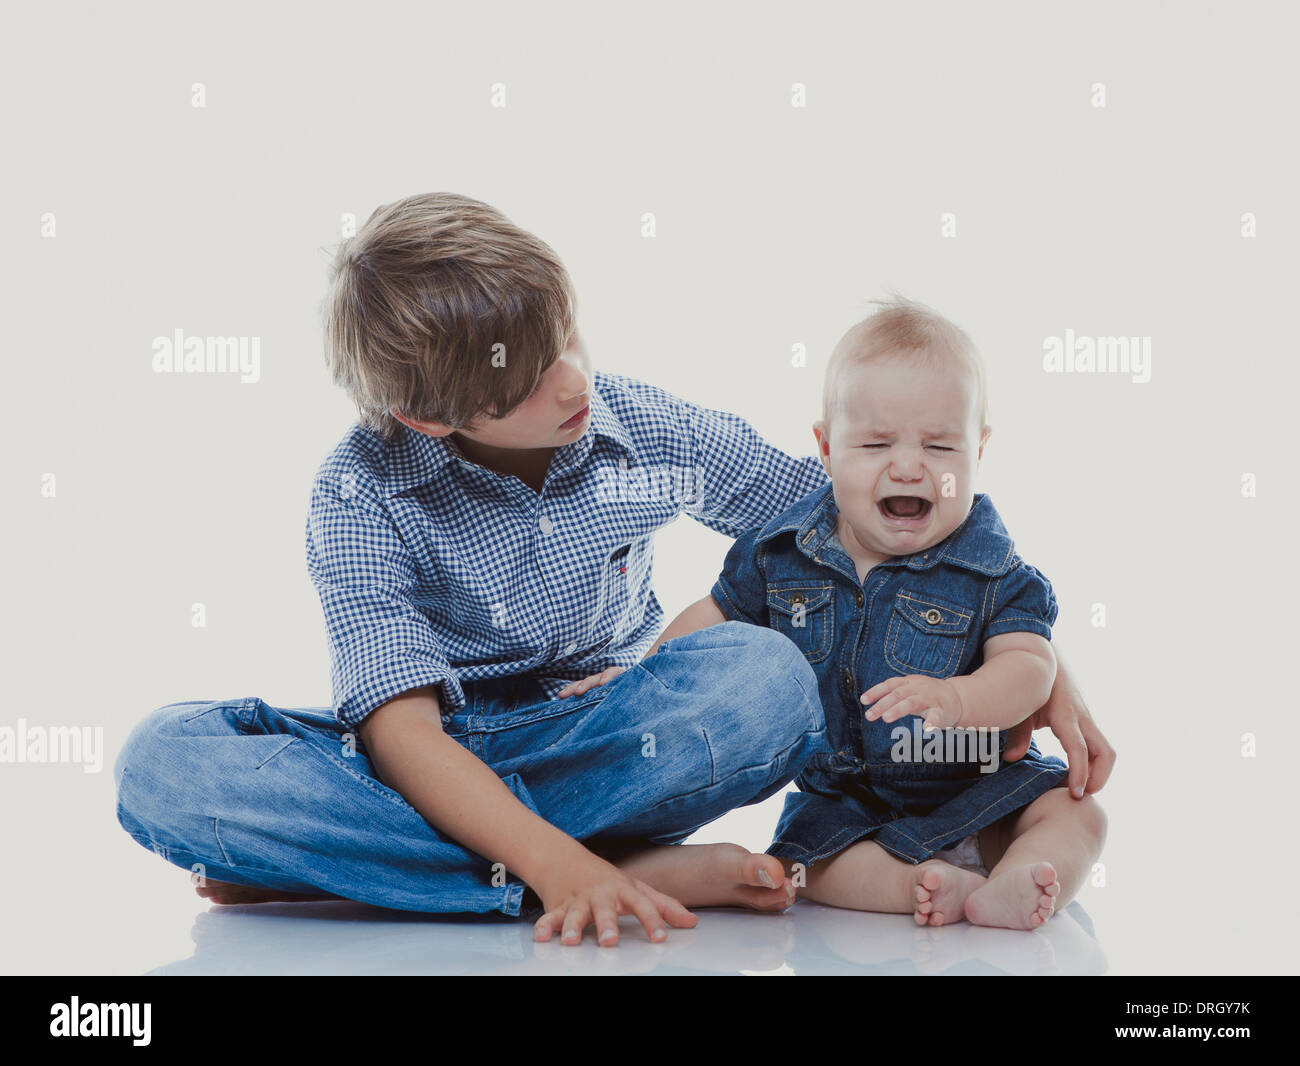 Großer Bruder mit kleiner, weinender Schwester - siblings Stock Photo